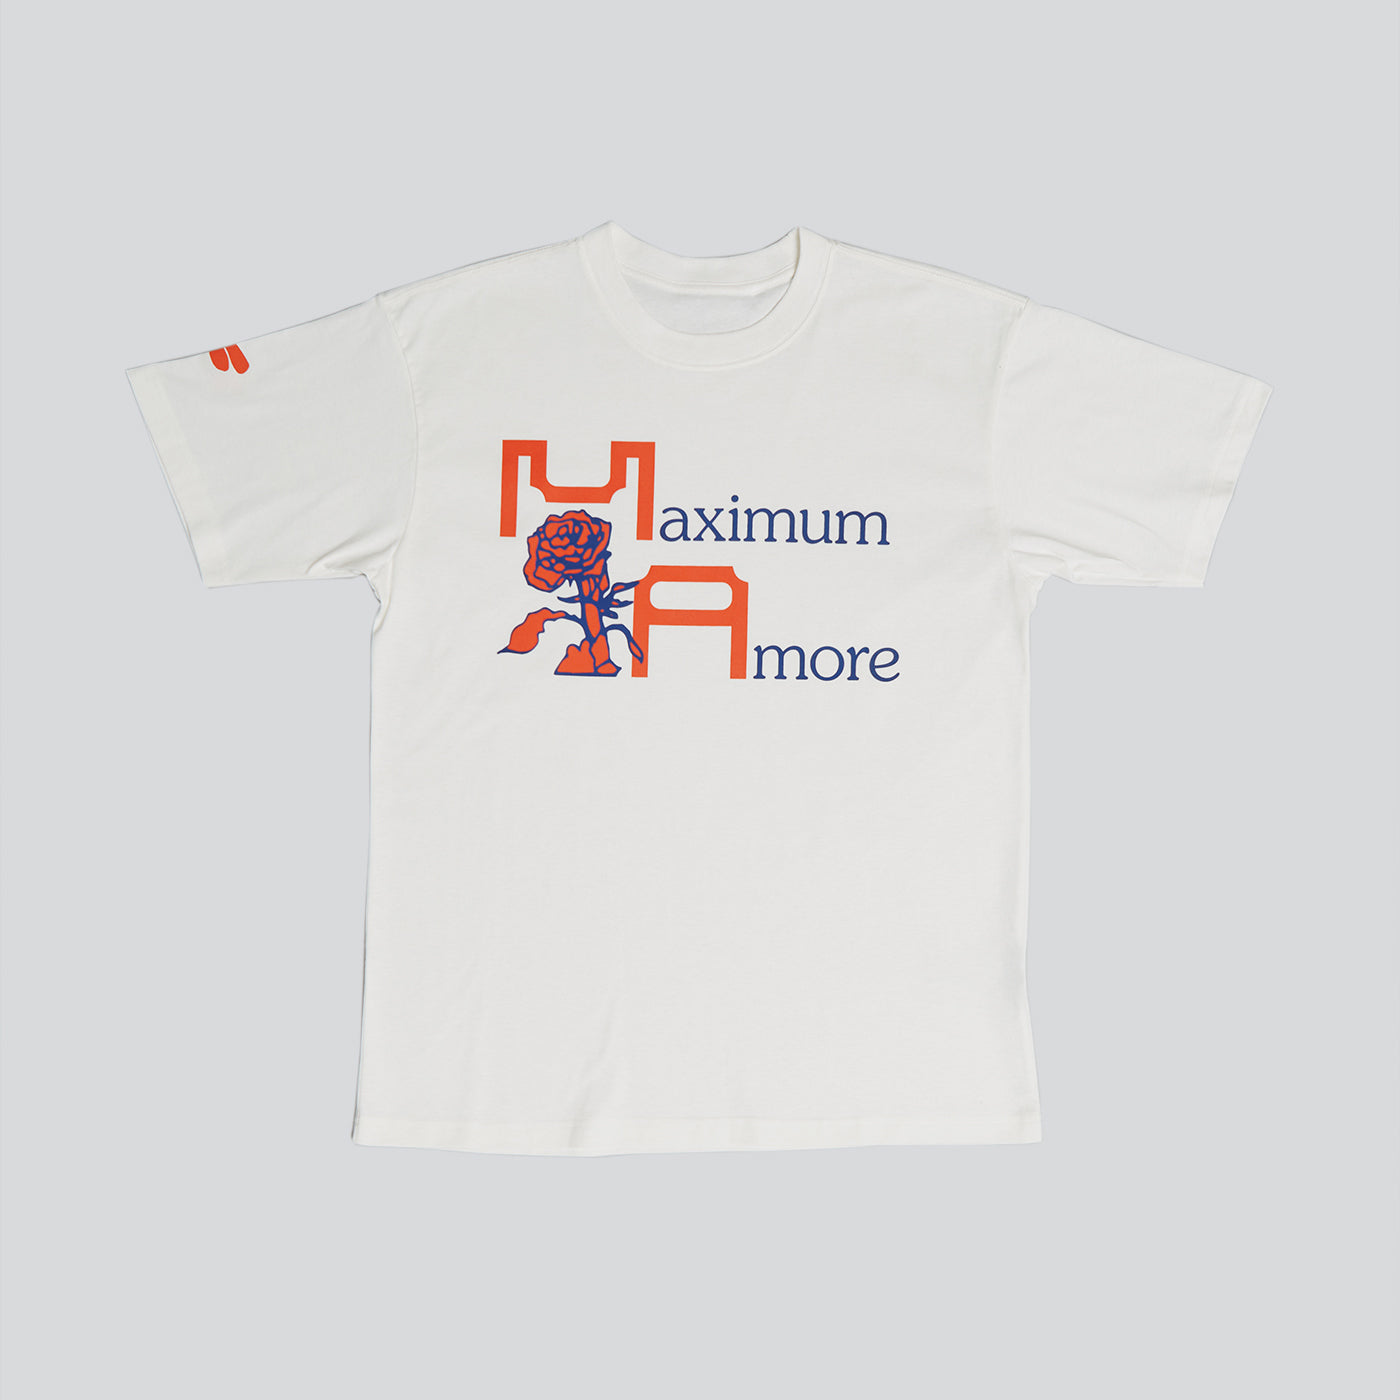 Maximum Amore t-shirt